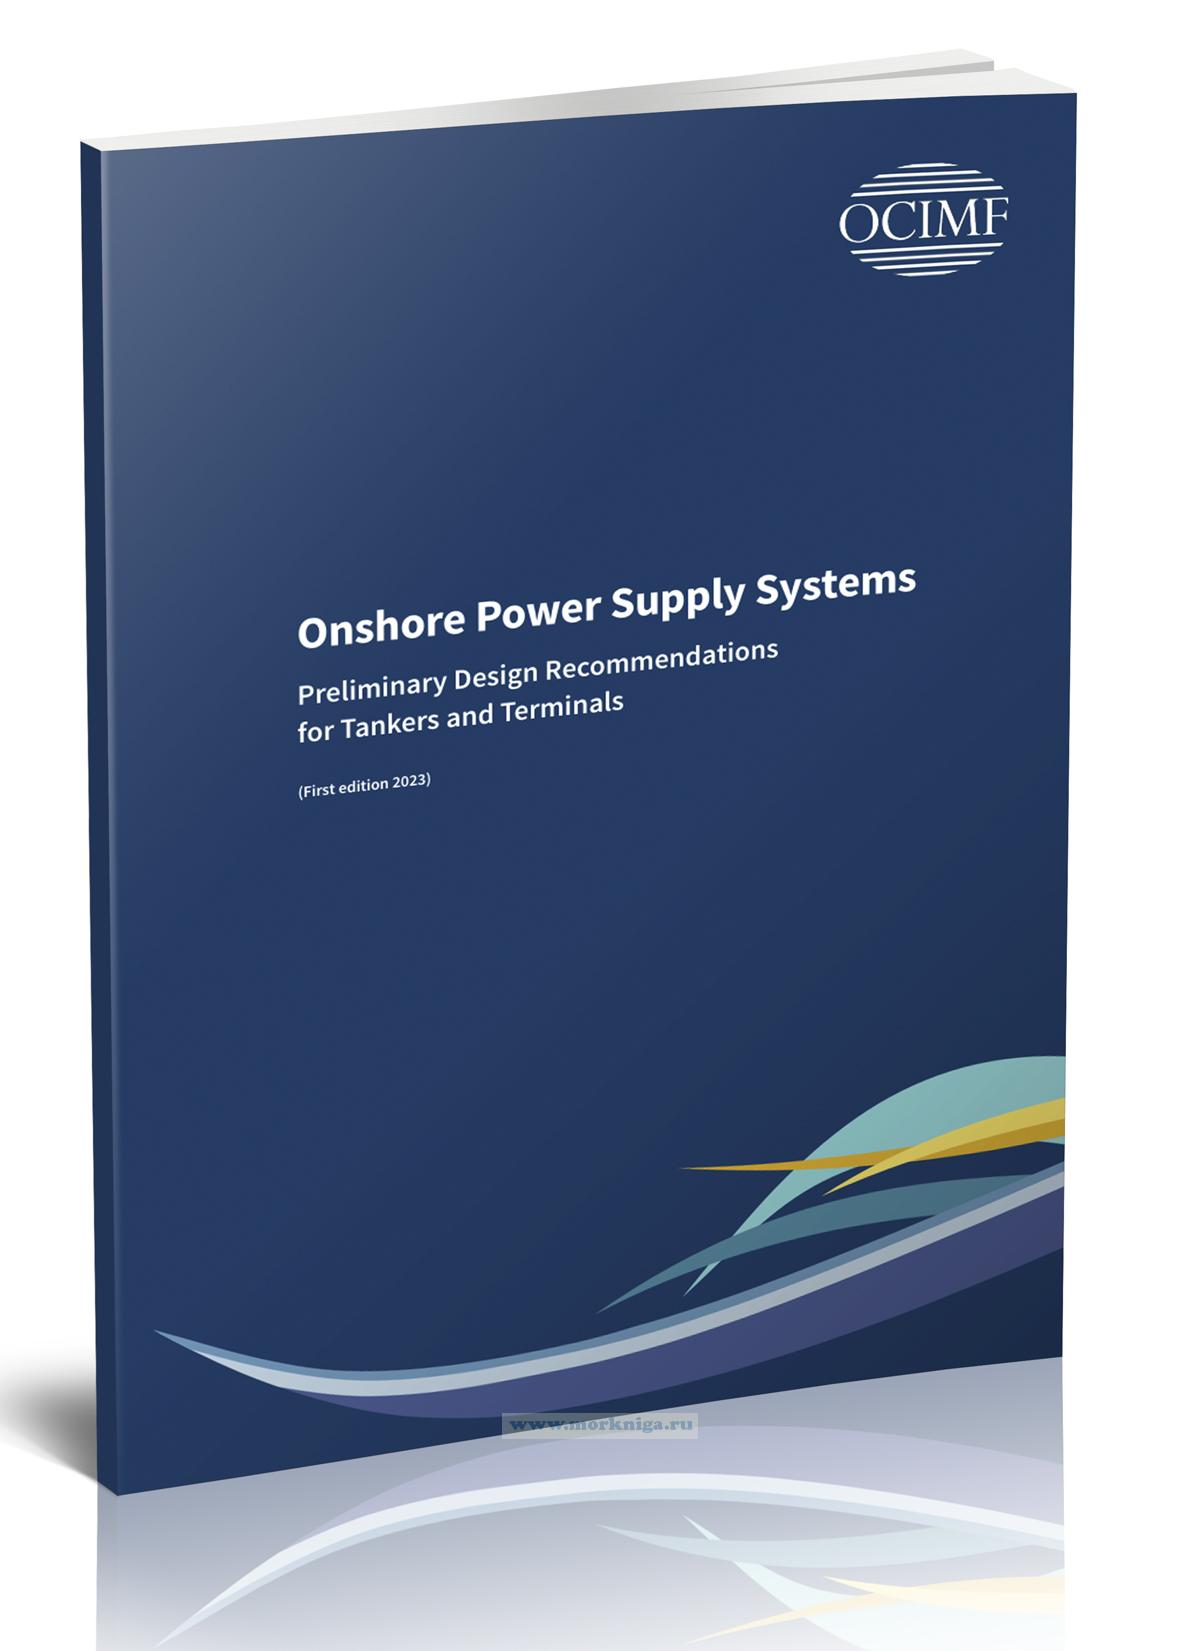 Onshore Power Supply Systems. Preliminary Design Reccomendations for Tankers and Terminals/Береговые системы электроснабжения. Предупредительные рекомендации по проектированию танкеров и терминалов